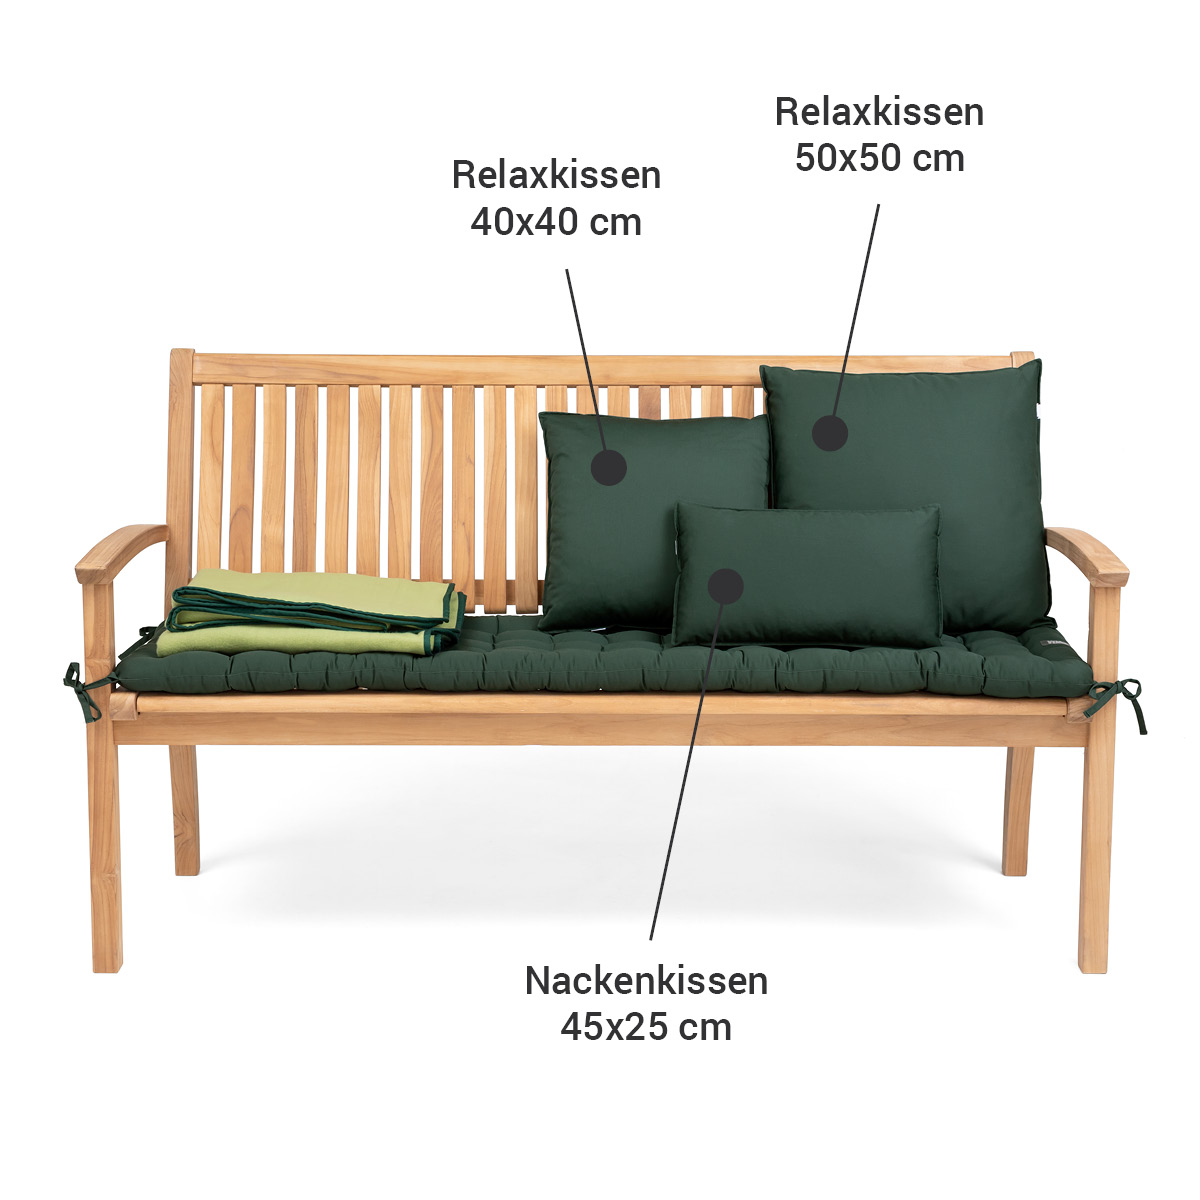 https://haveaseat.shop/media/4a/08/af/1676631309/nackenkissen-moosgruen-a-seat-sd14.jpg